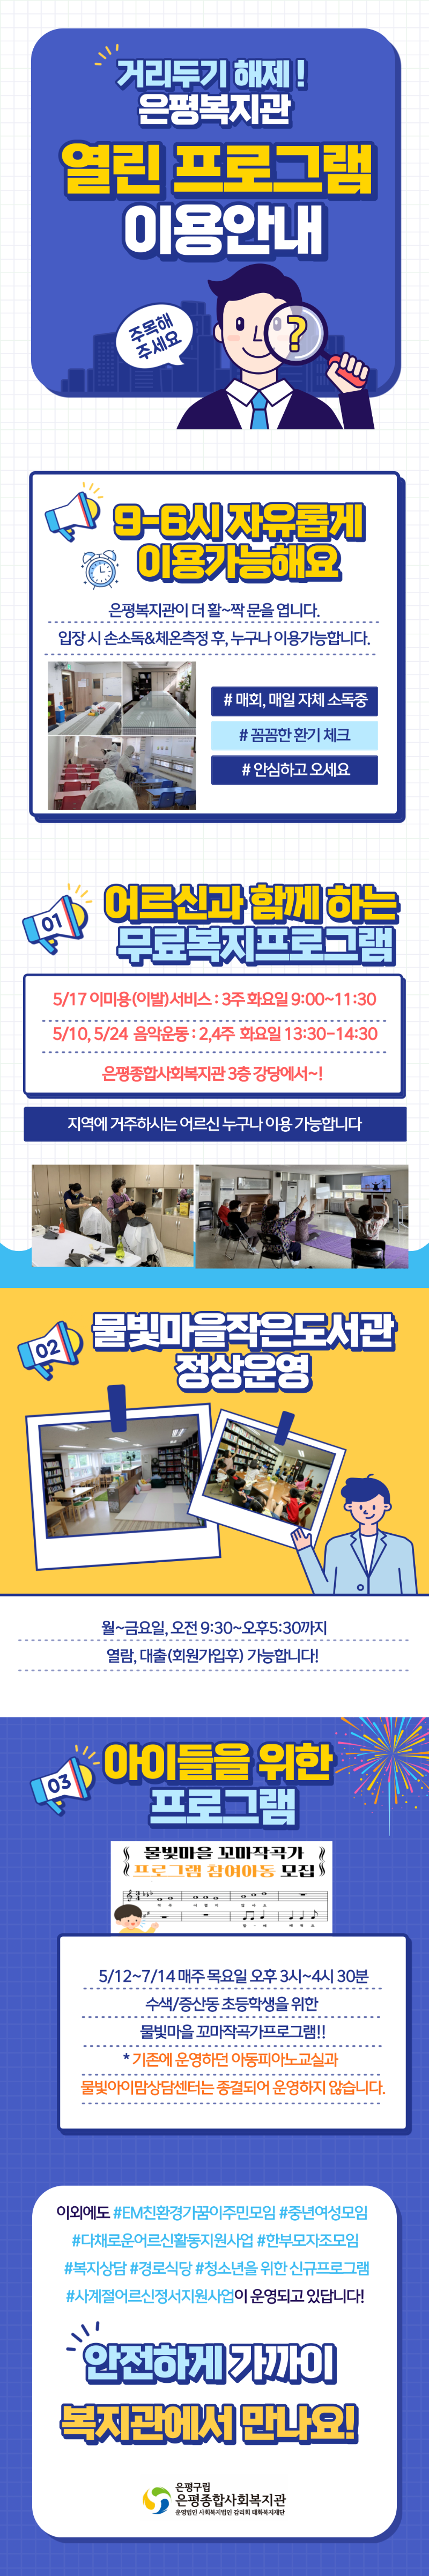 복지관사업-홍보카드뉴스.png